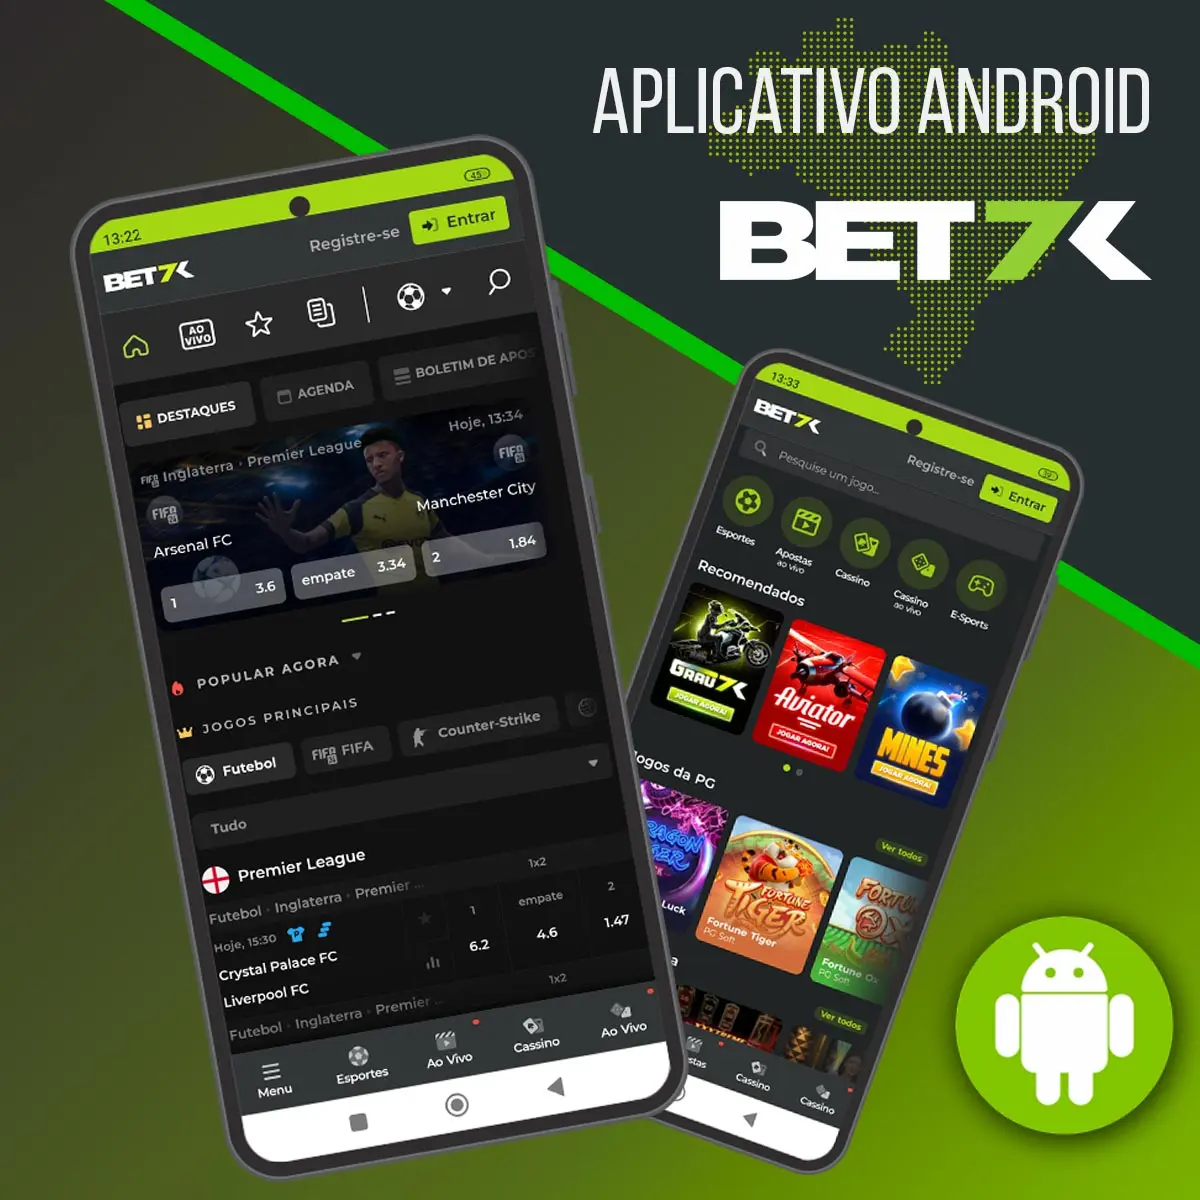 Aplicativo prático para Android da casa de apostas Bet7k no Brasil